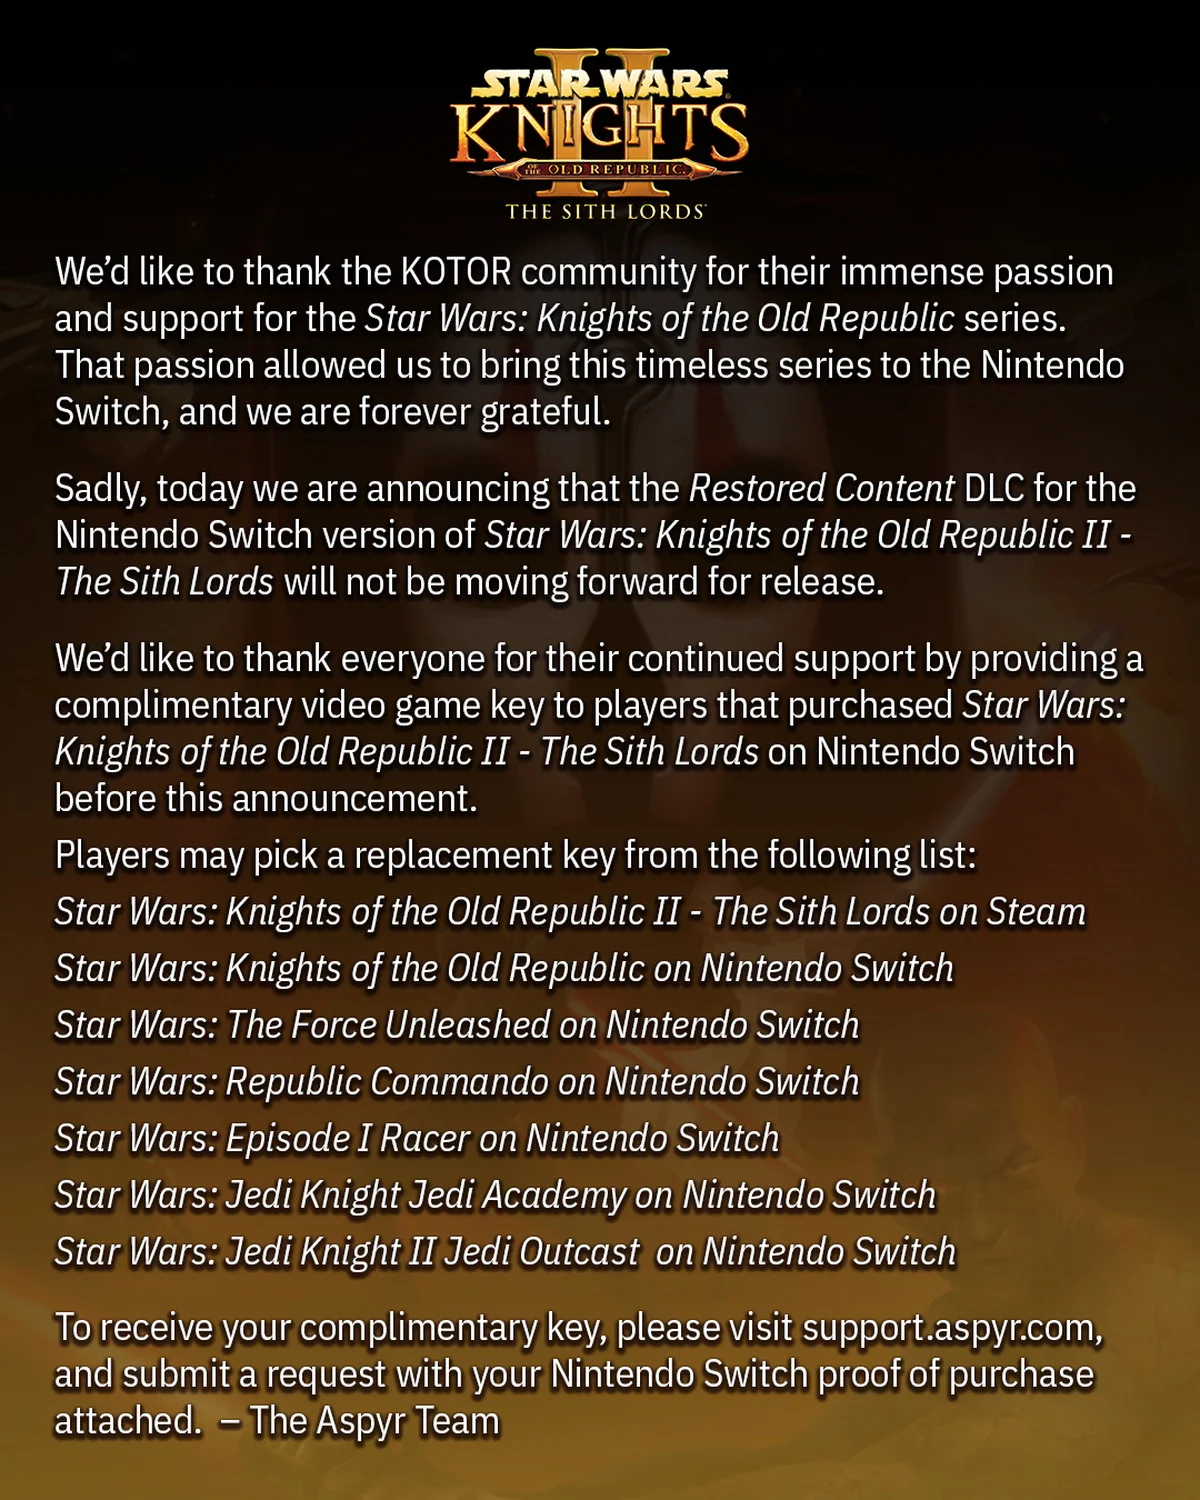 Aspyr отменила восстановленный контент для Star Wars: KOTOR 2 на Nintendo Switch - фото 1